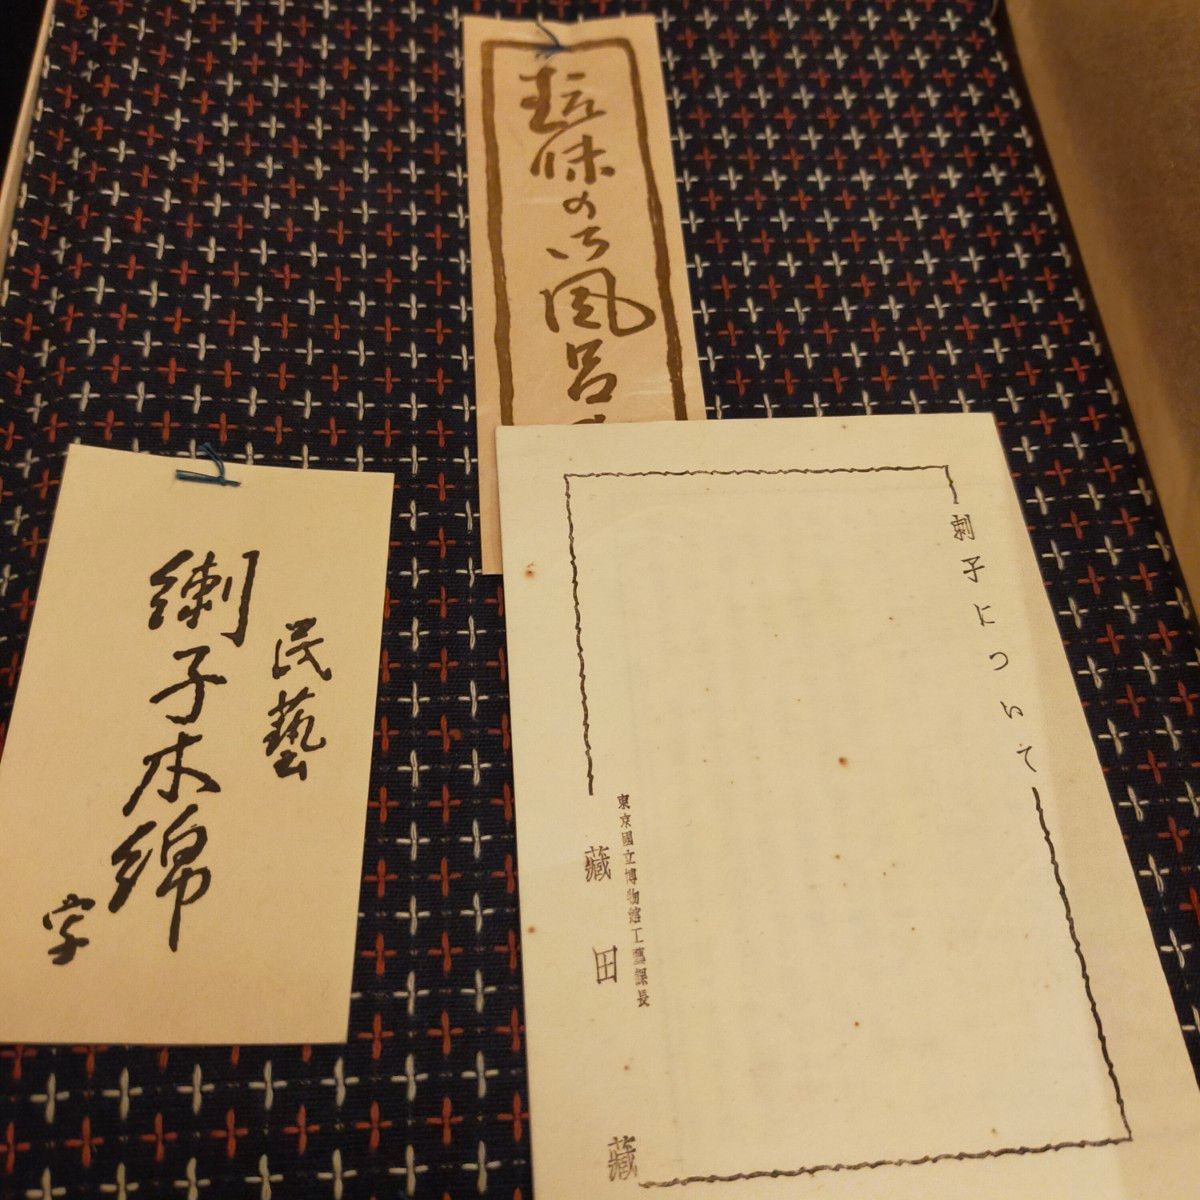 刺子　刺し子　日本　風呂敷　テーブル　ディスプレイ　クロス　伝統　工芸品